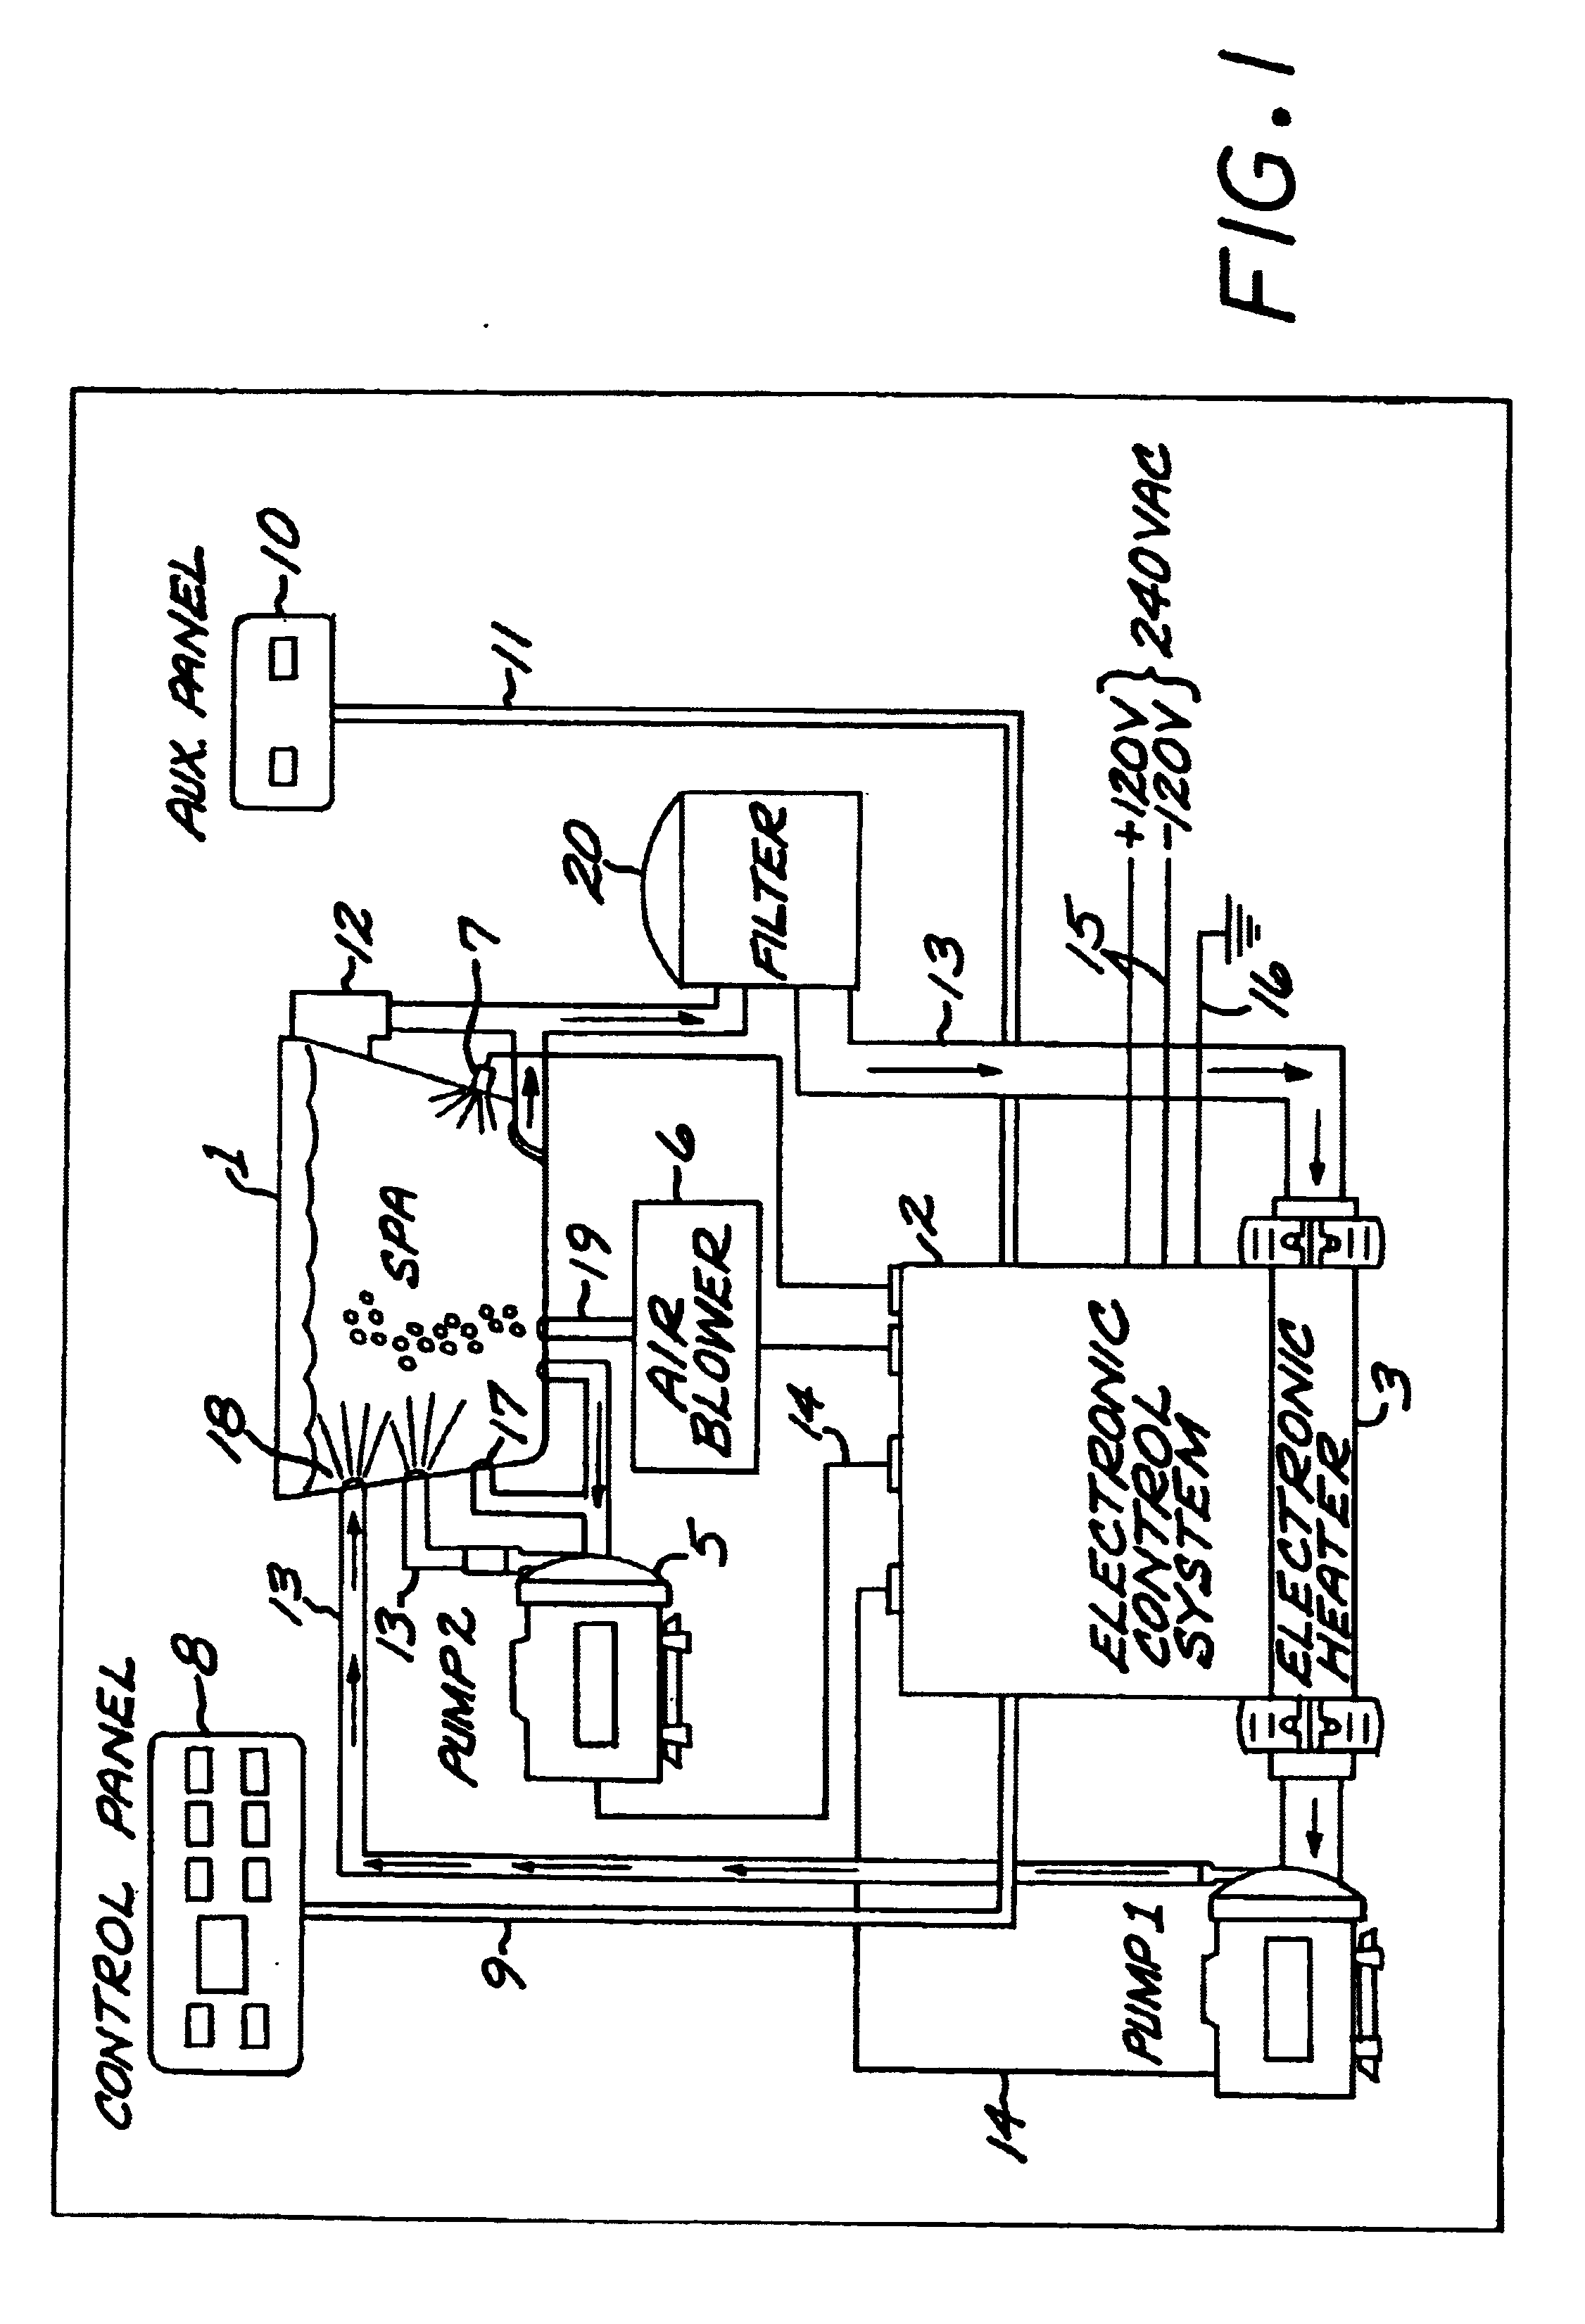 softub parts diagram